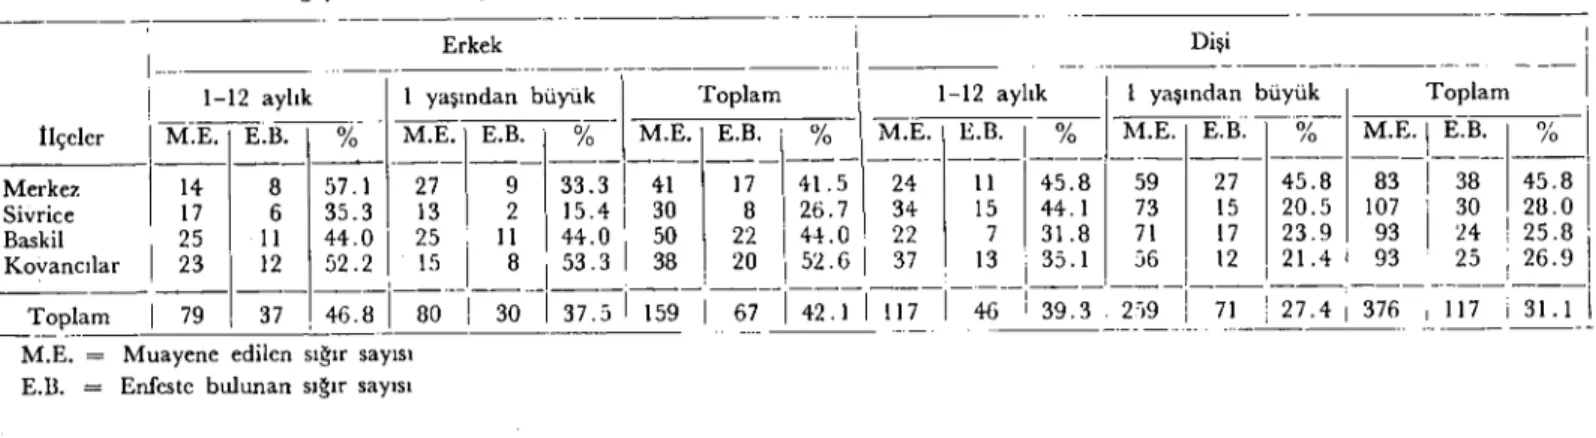 Tablo 4. Elazığ yöresindc muaycne edilen ve enfeste bulunan erkek ve dişi sığırların yaş gruplarına göre dağılımı